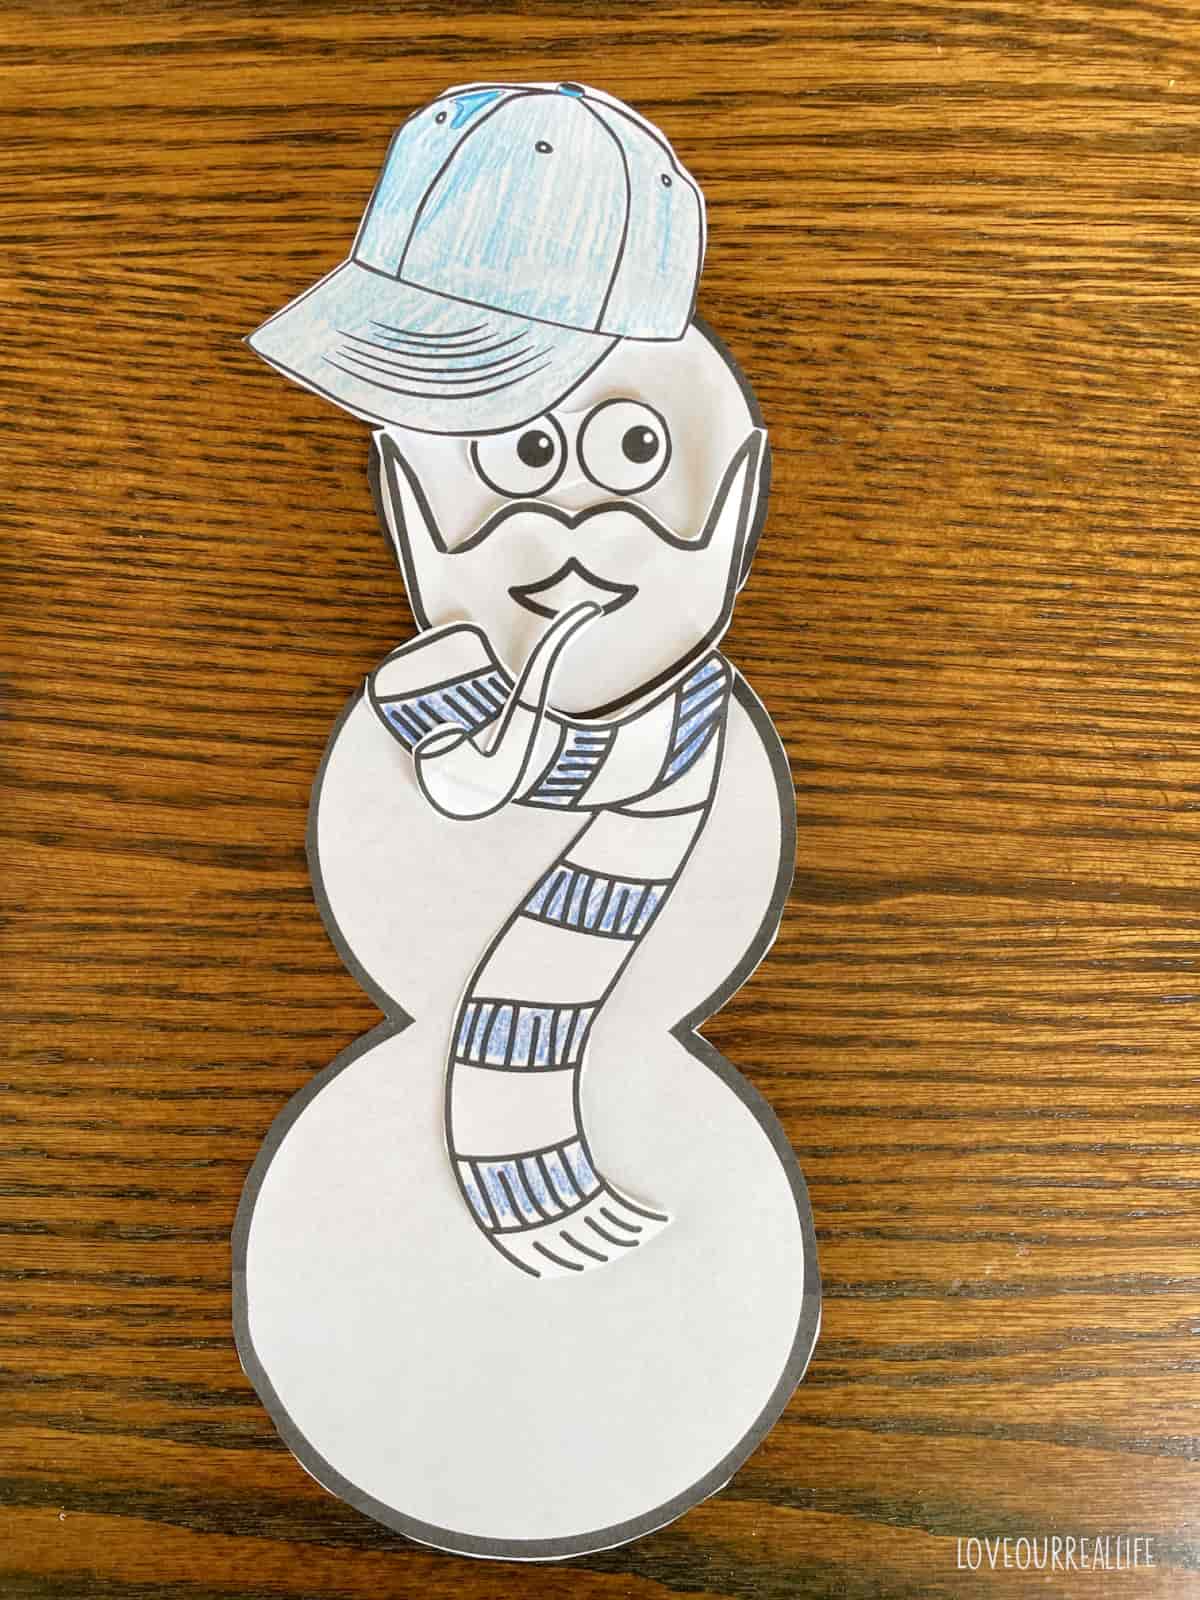 Santa cutout build a snowman craft.